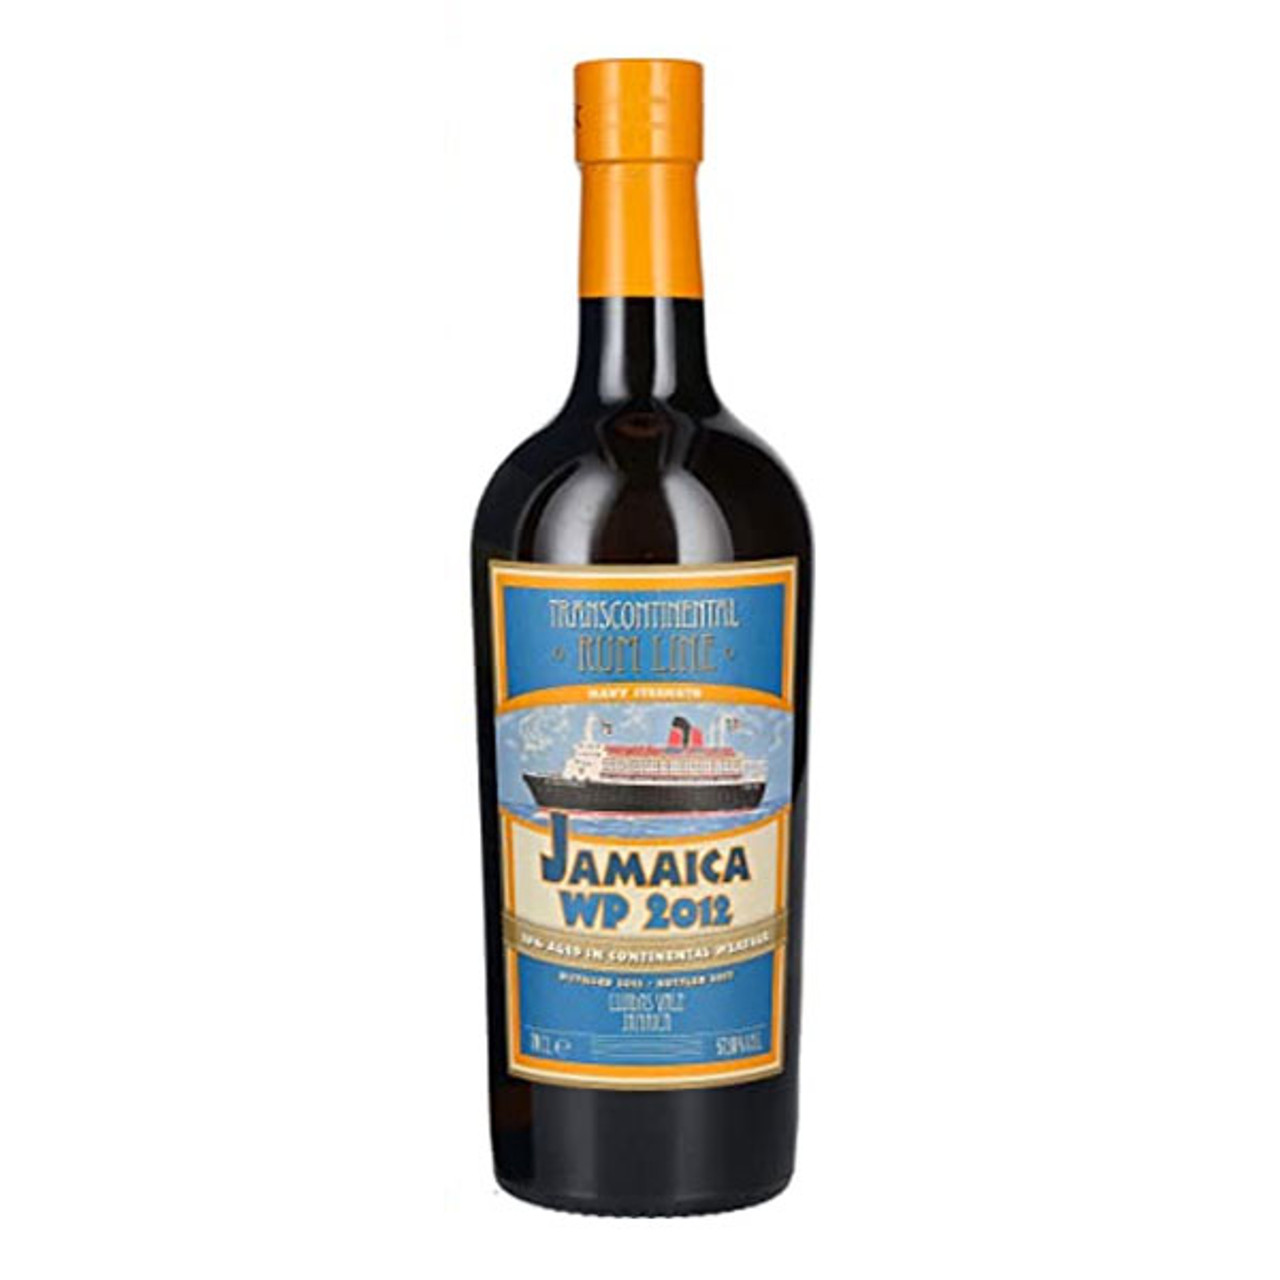 Zacapa 23 year Rum 750mL - Wally's Wine & Spirits